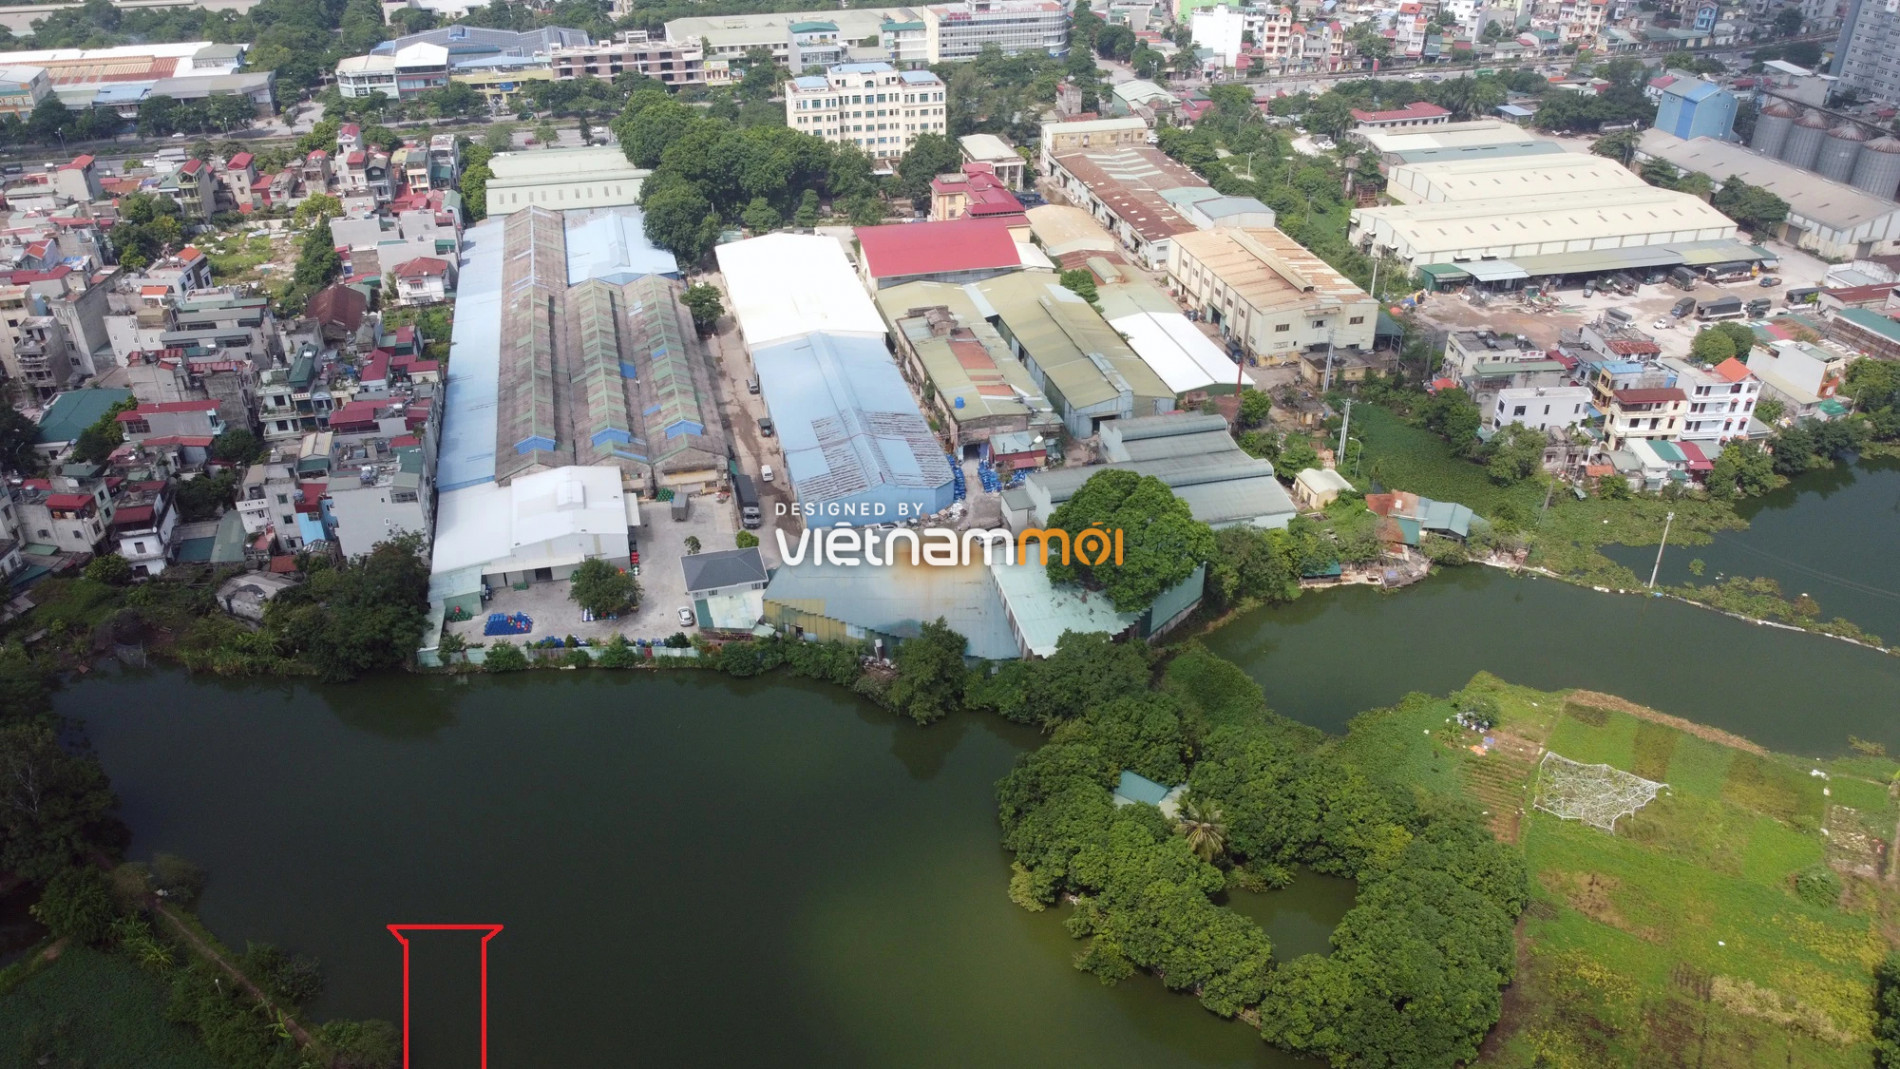  Những khu đất sắp thu hồi để mở đường ở xã Liên Ninh, Thanh Trì, Hà Nội (phần 6) - Ảnh 11.